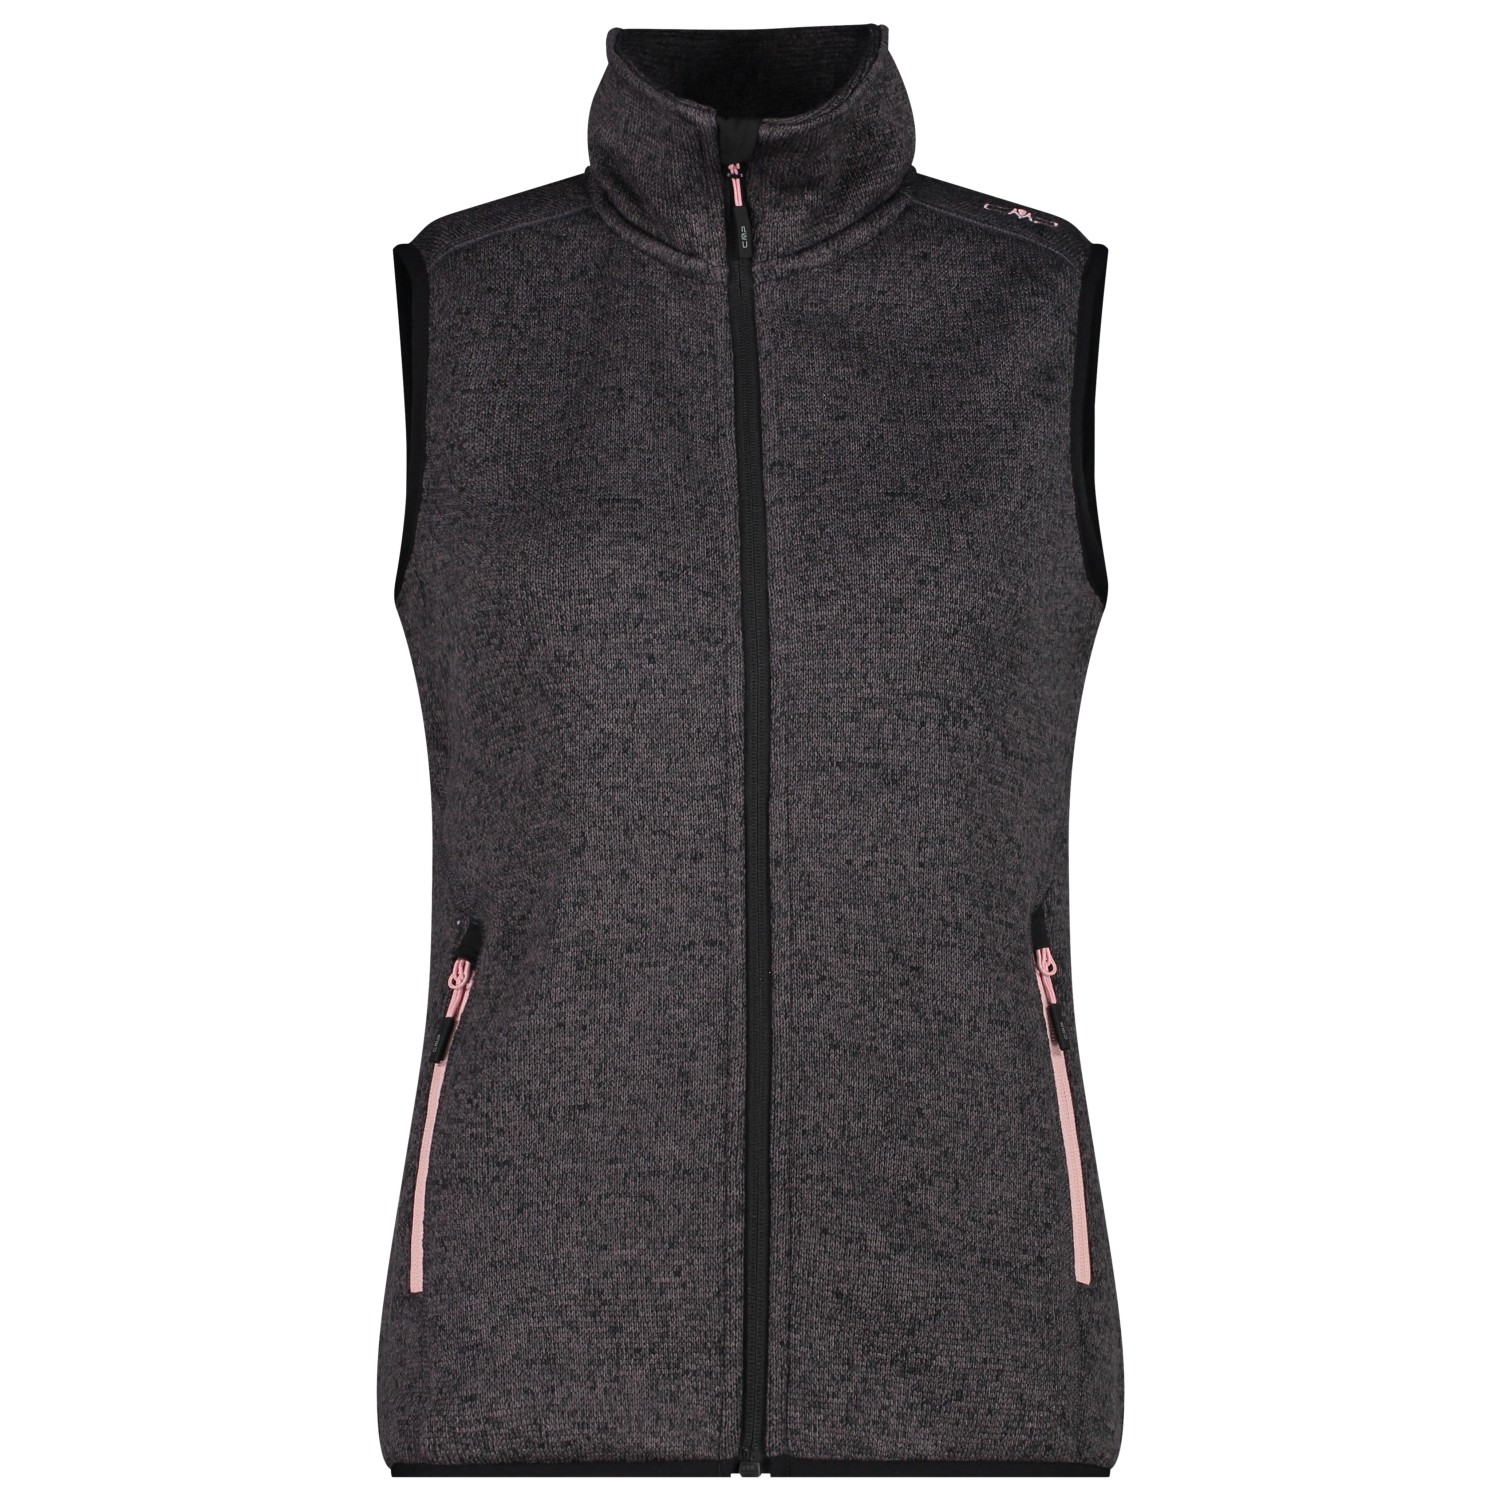 Флисовый жилет Cmp Women's Vest Jacquard Knitted, цвет Nero/Rose